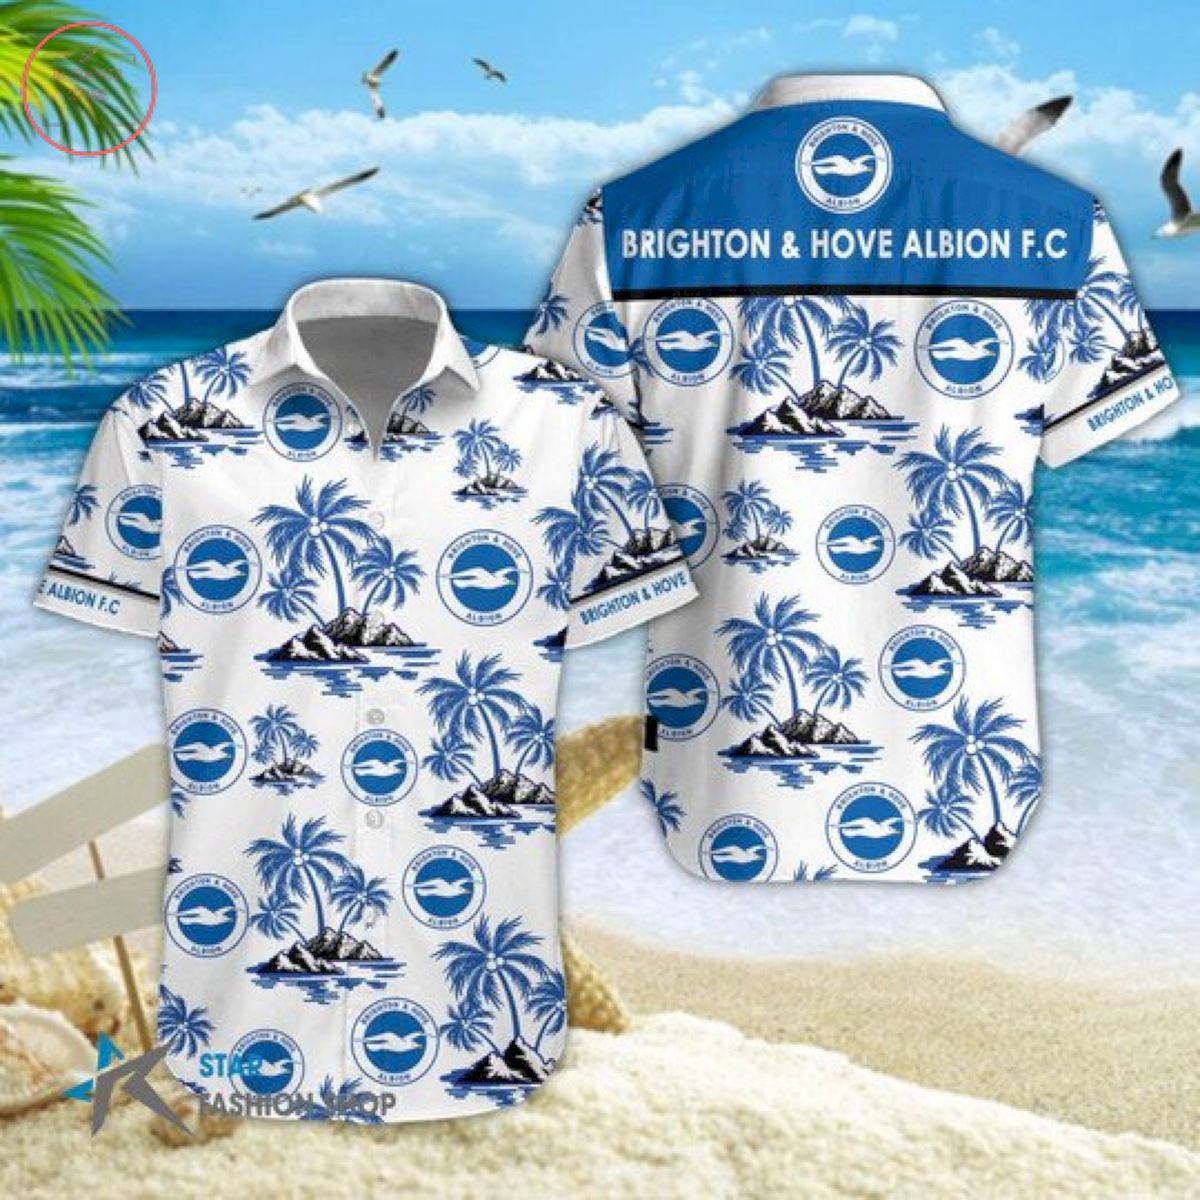 EPL Brighton & Hove Albion Floral Hawaiian Shirts and Shorts